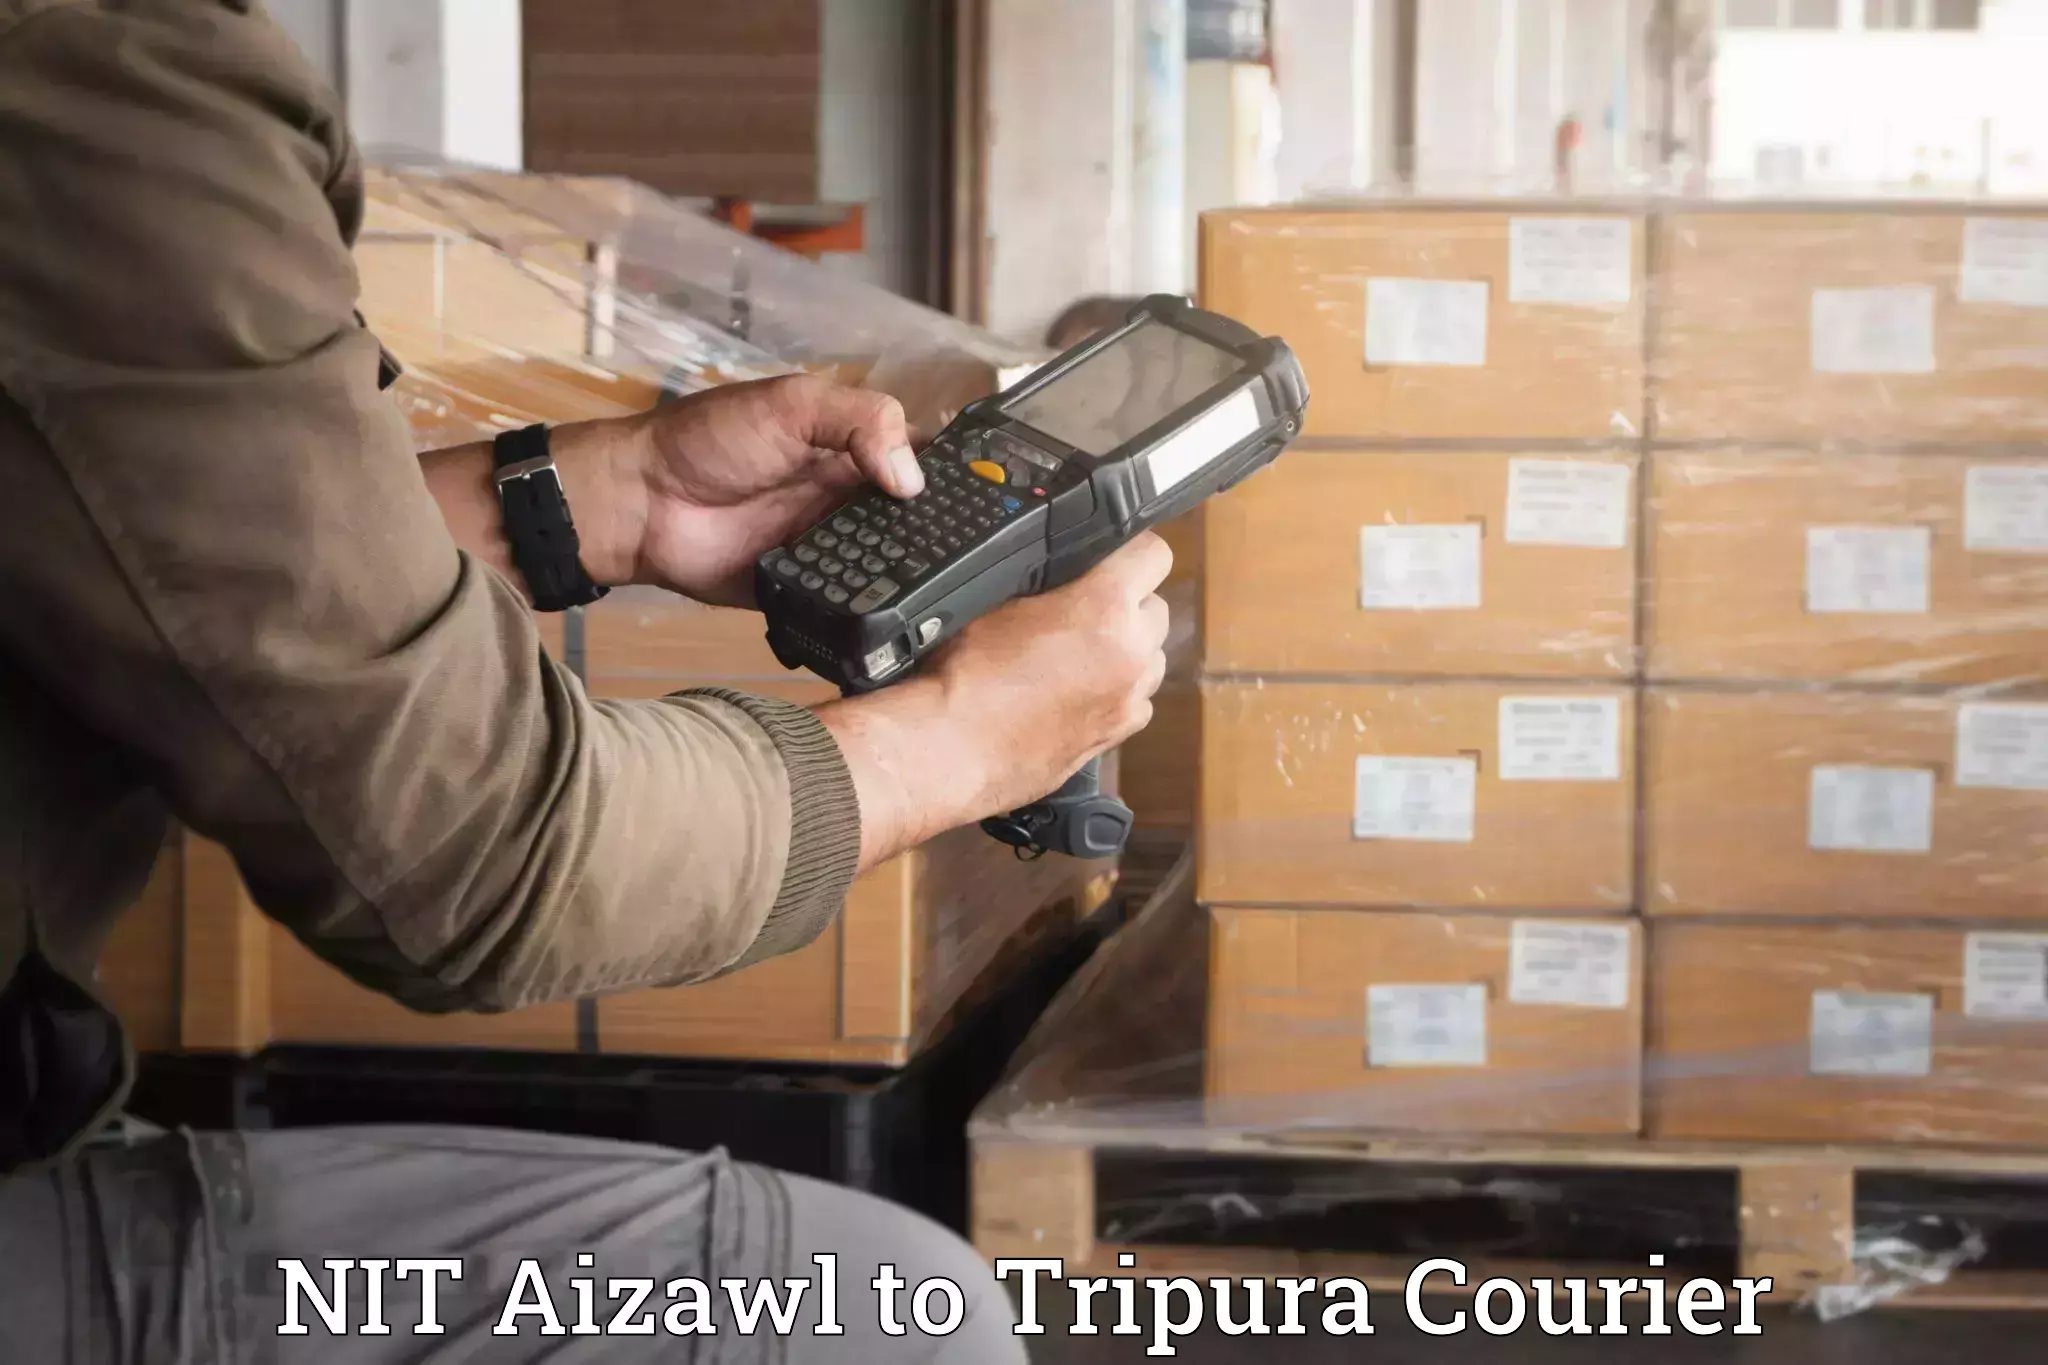 Specialized moving company NIT Aizawl to Manu Bazar